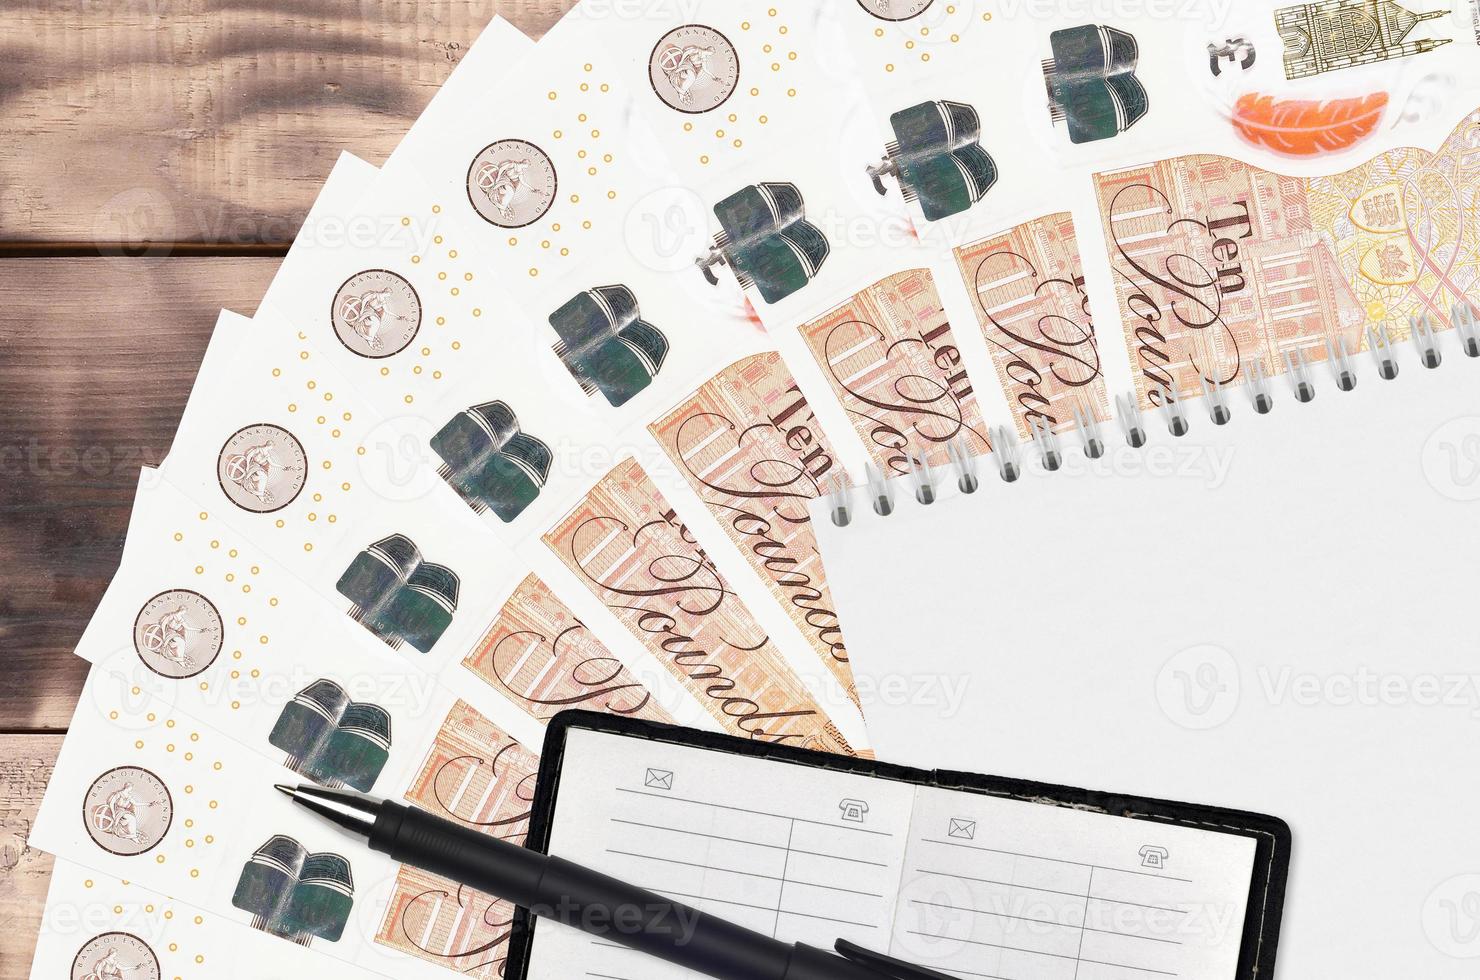 10 Britannico sterline fatture fan e bloc notes con contatto libro e nero penna. concetto di finanziario pianificazione e attività commerciale strategia foto